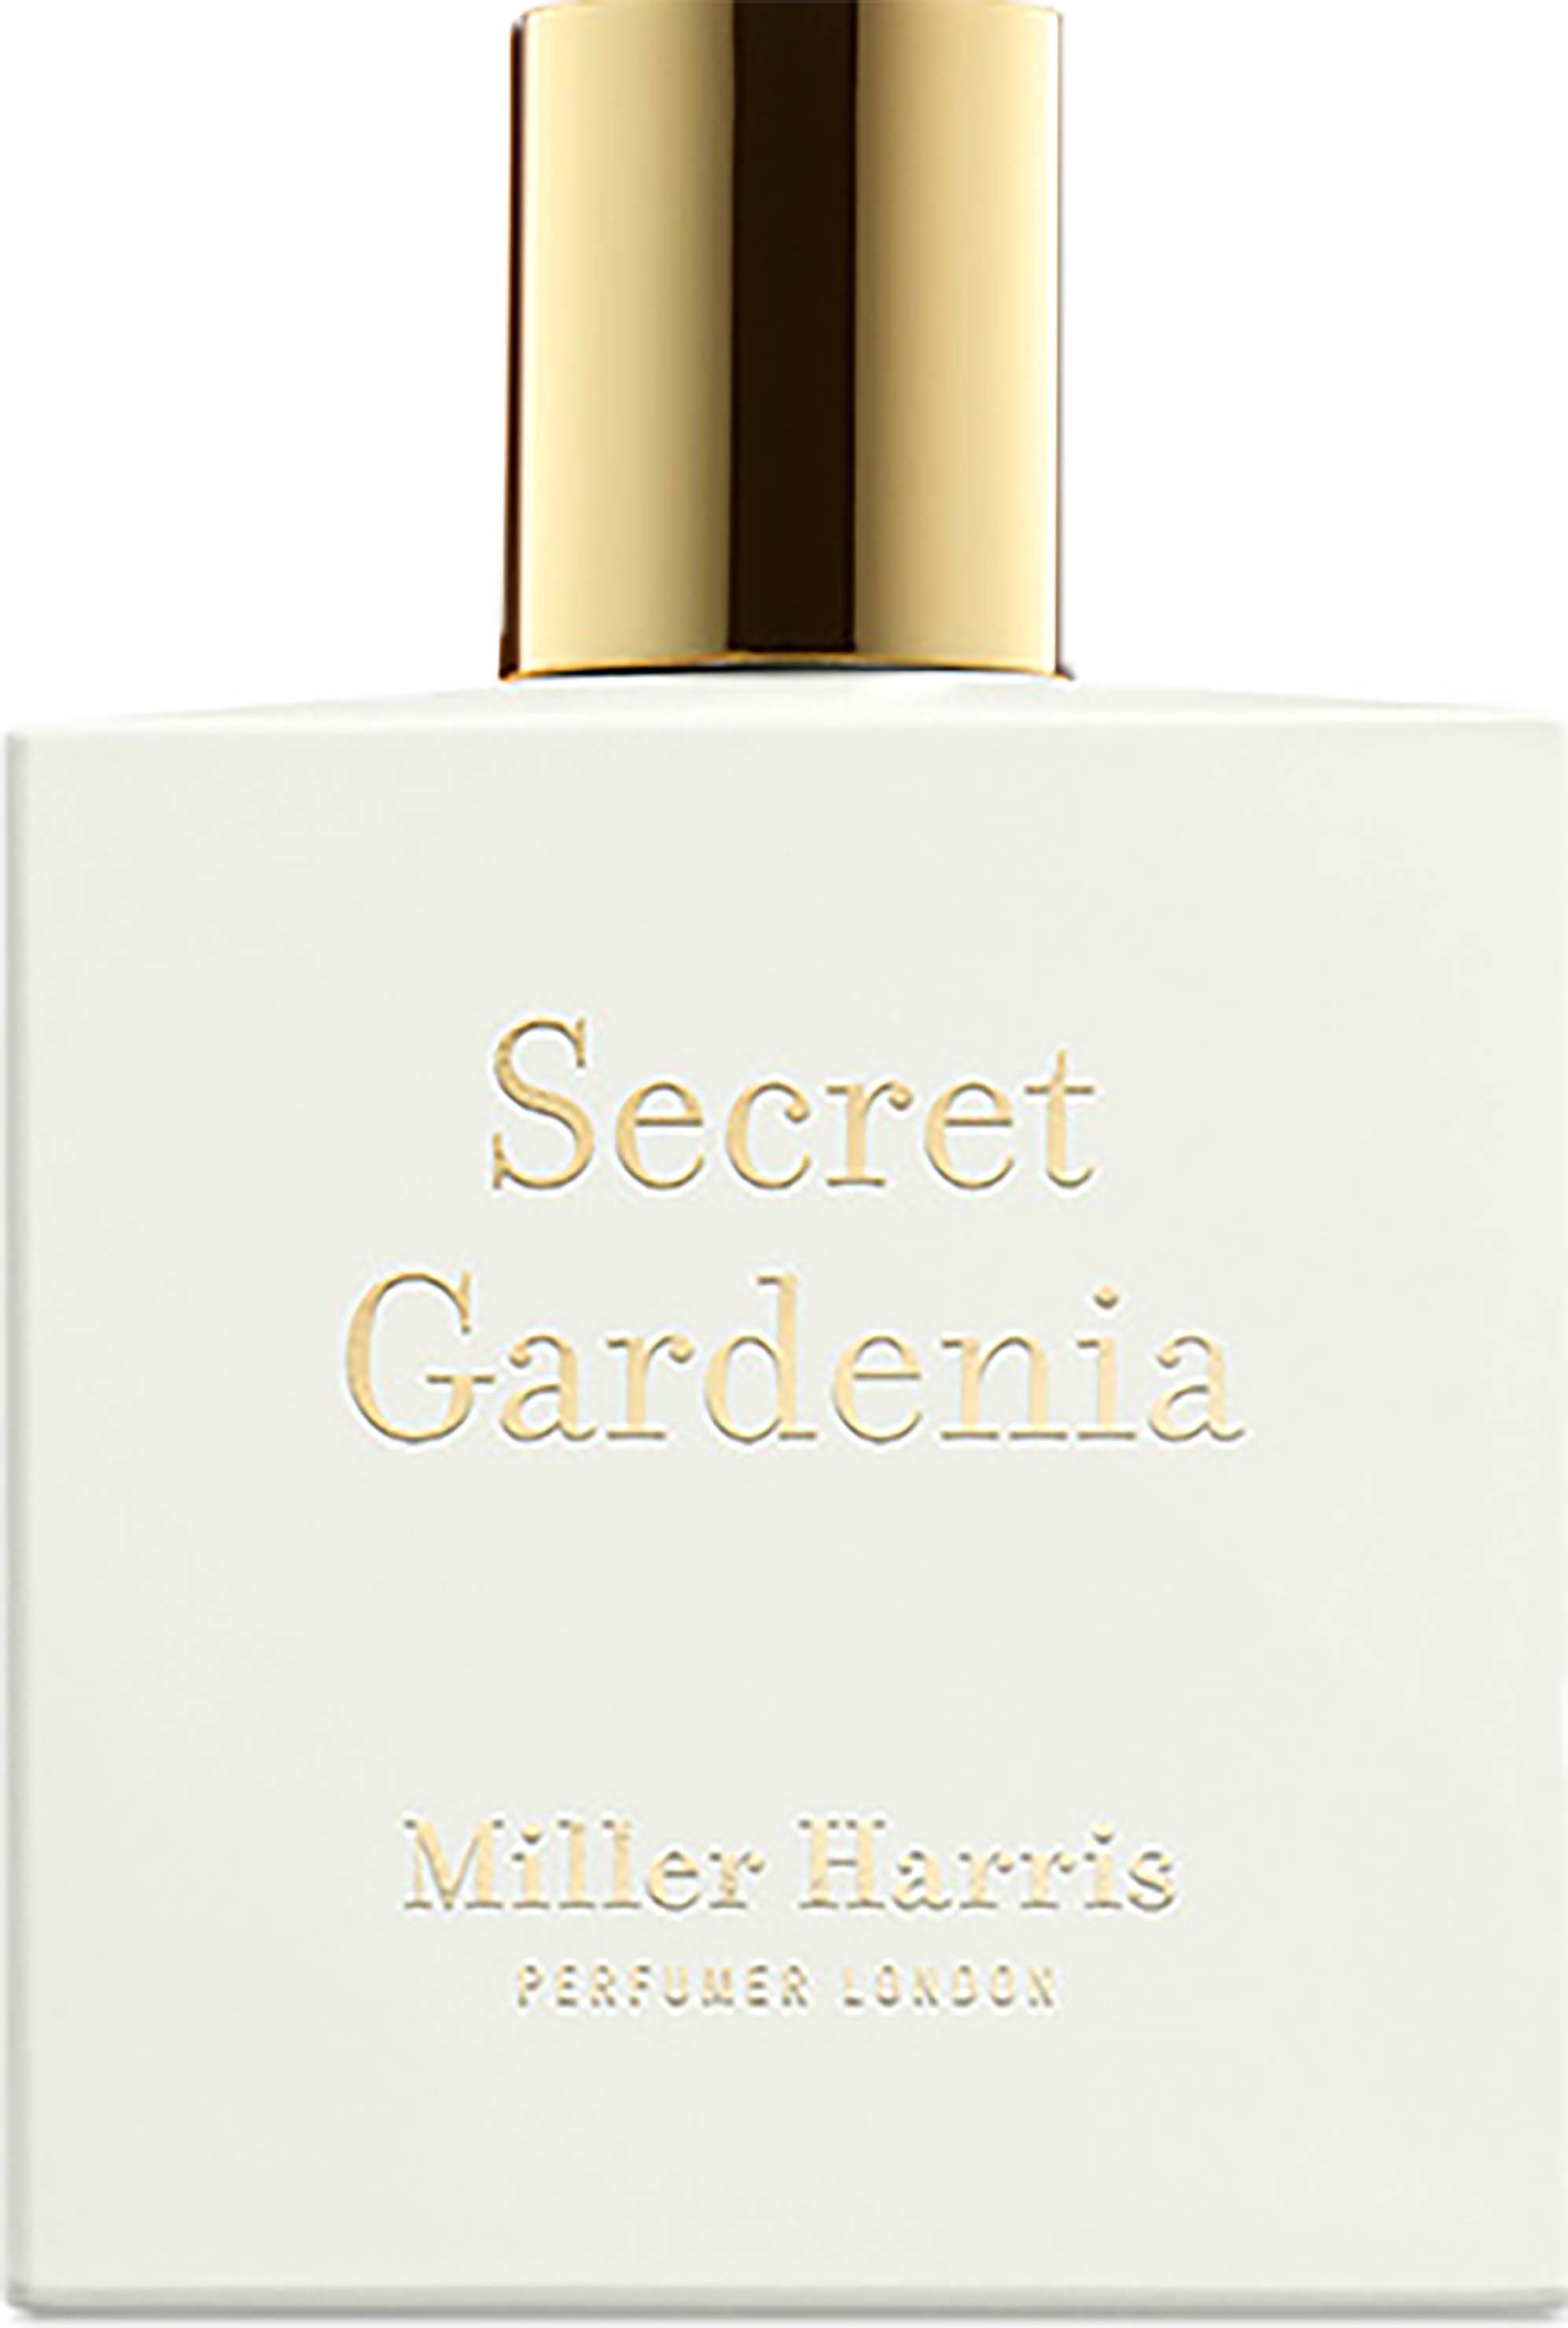 miller harris secret gardenia